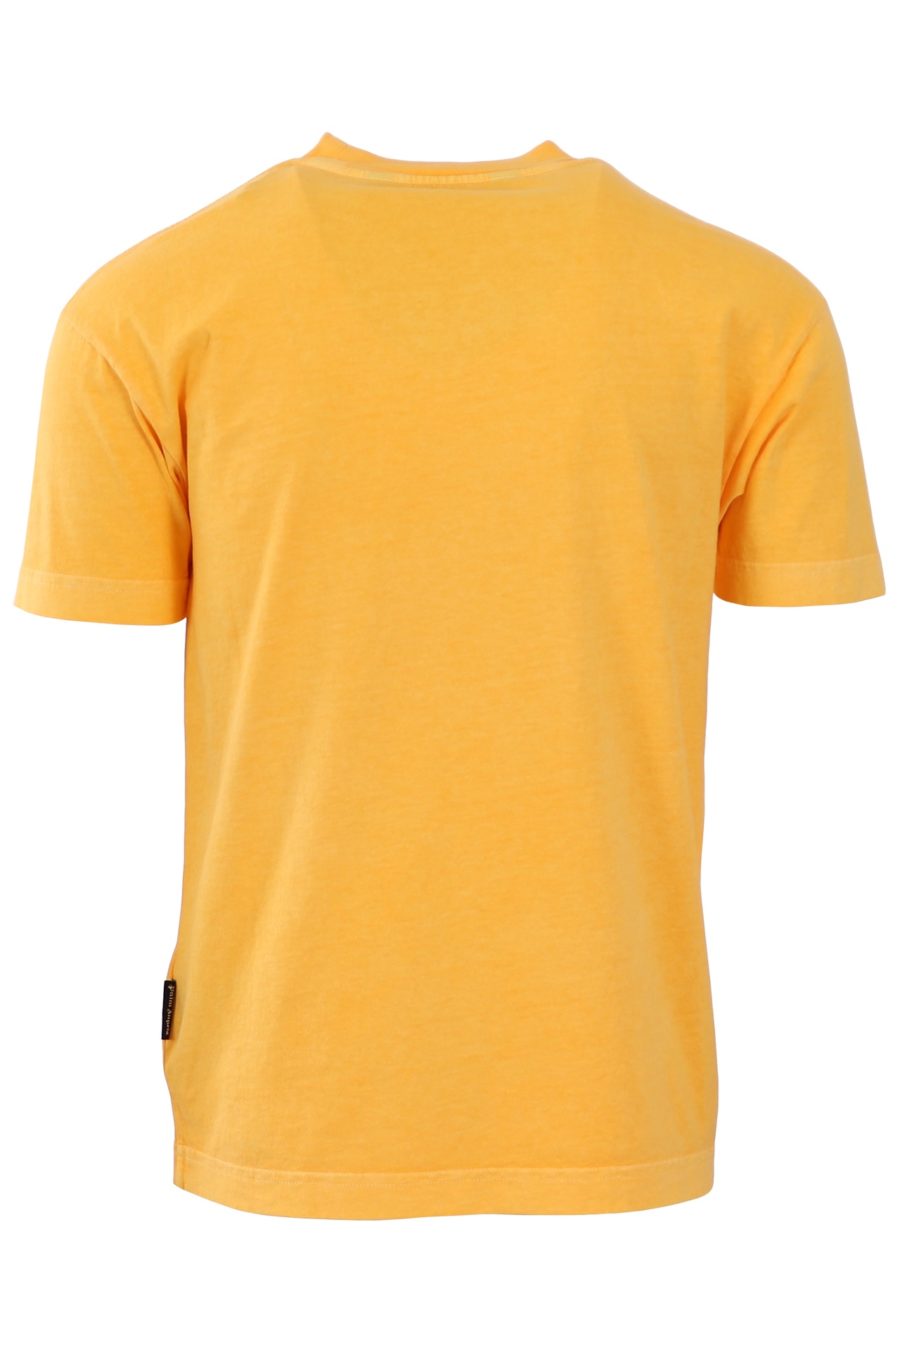 Camiseta Palm Angels amarilla logo verde - 8e57556cbe0ec34b1ea81560a1f58d9c80d5ec90